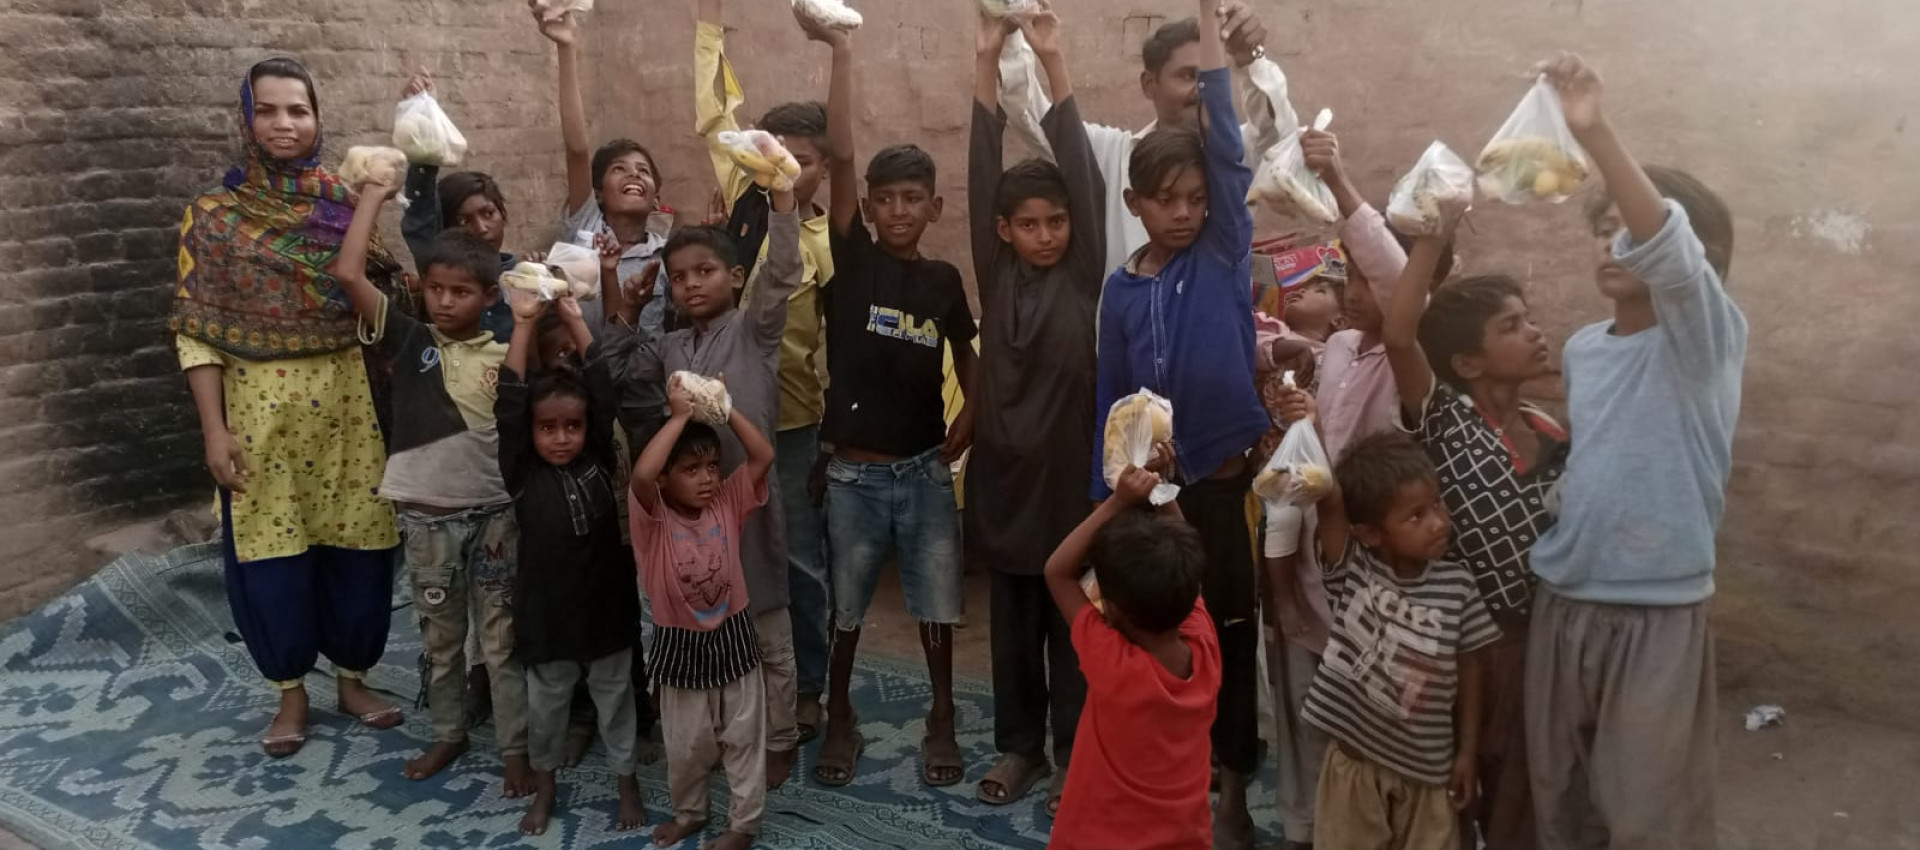 Einsatz in der Hitze: Wie Ihre Spenden Leben in Pakistan verändern